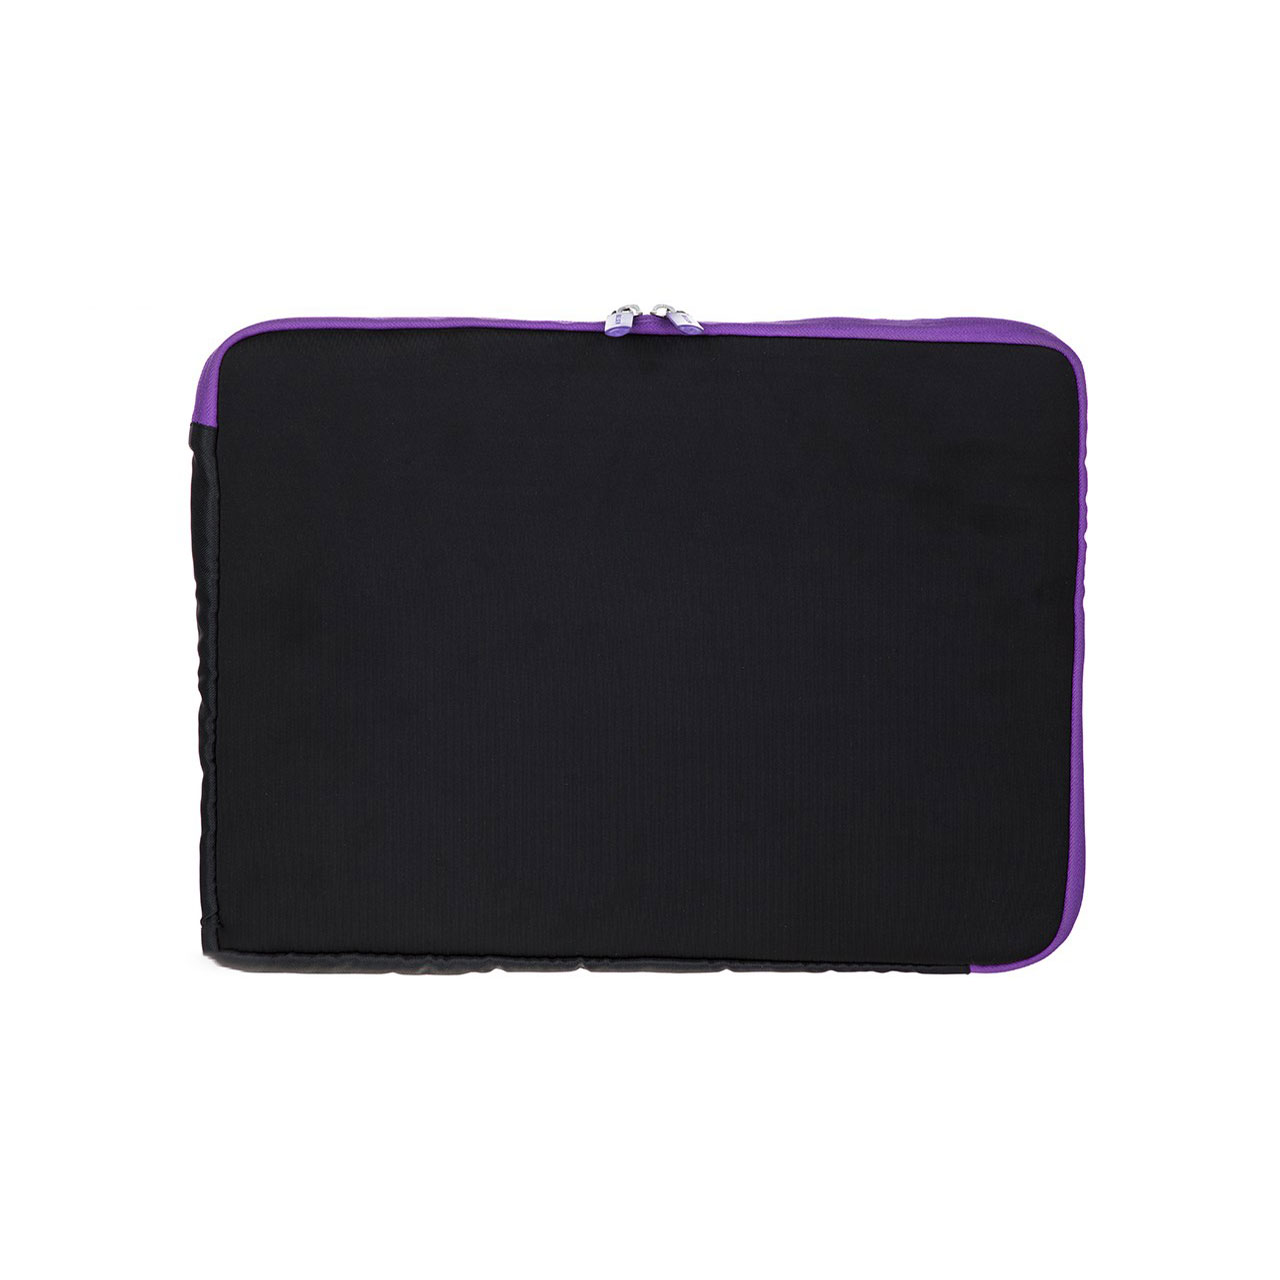 کاور لپ تاپ بلکین مدل F8N160ea088 مناسب برای لپ تاپ های 15 تا 17 اینچی